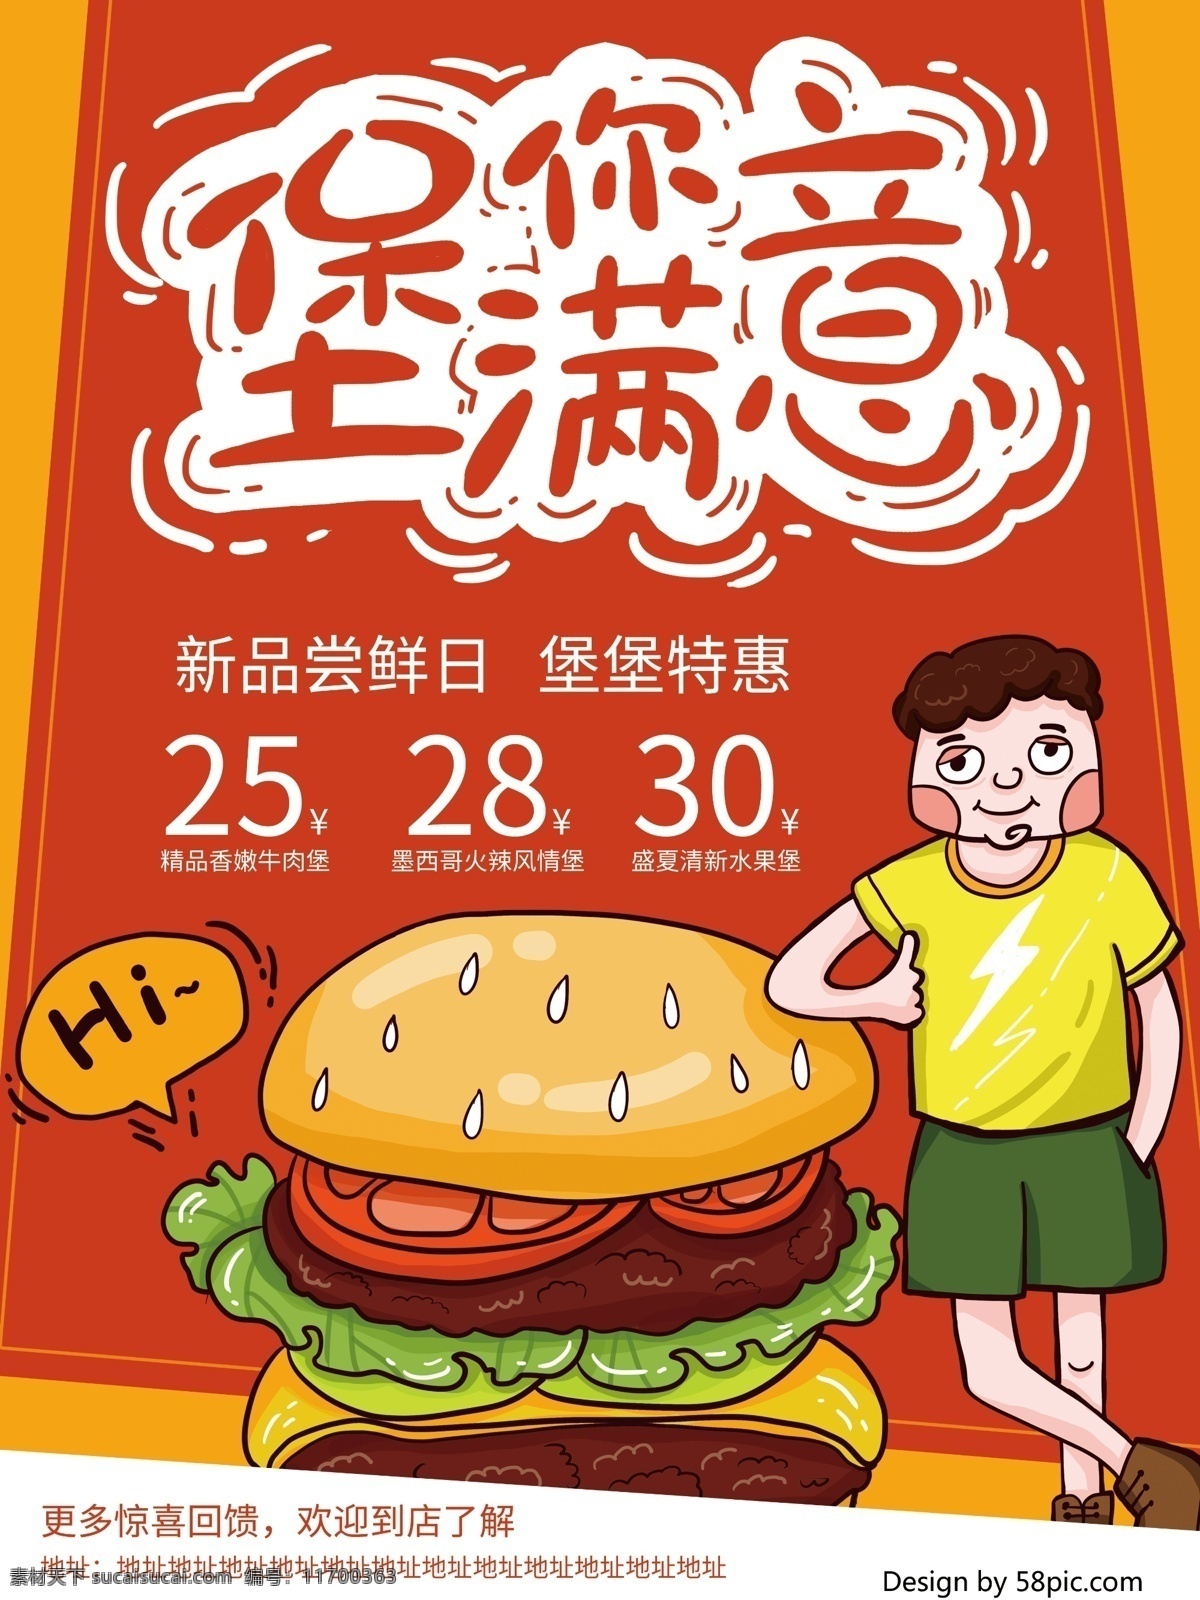 原创 卡通 涂鸦 pop 风格 汉堡 美食 海报 美食海报 汉堡海报 手绘汉堡 优惠 特价 新品